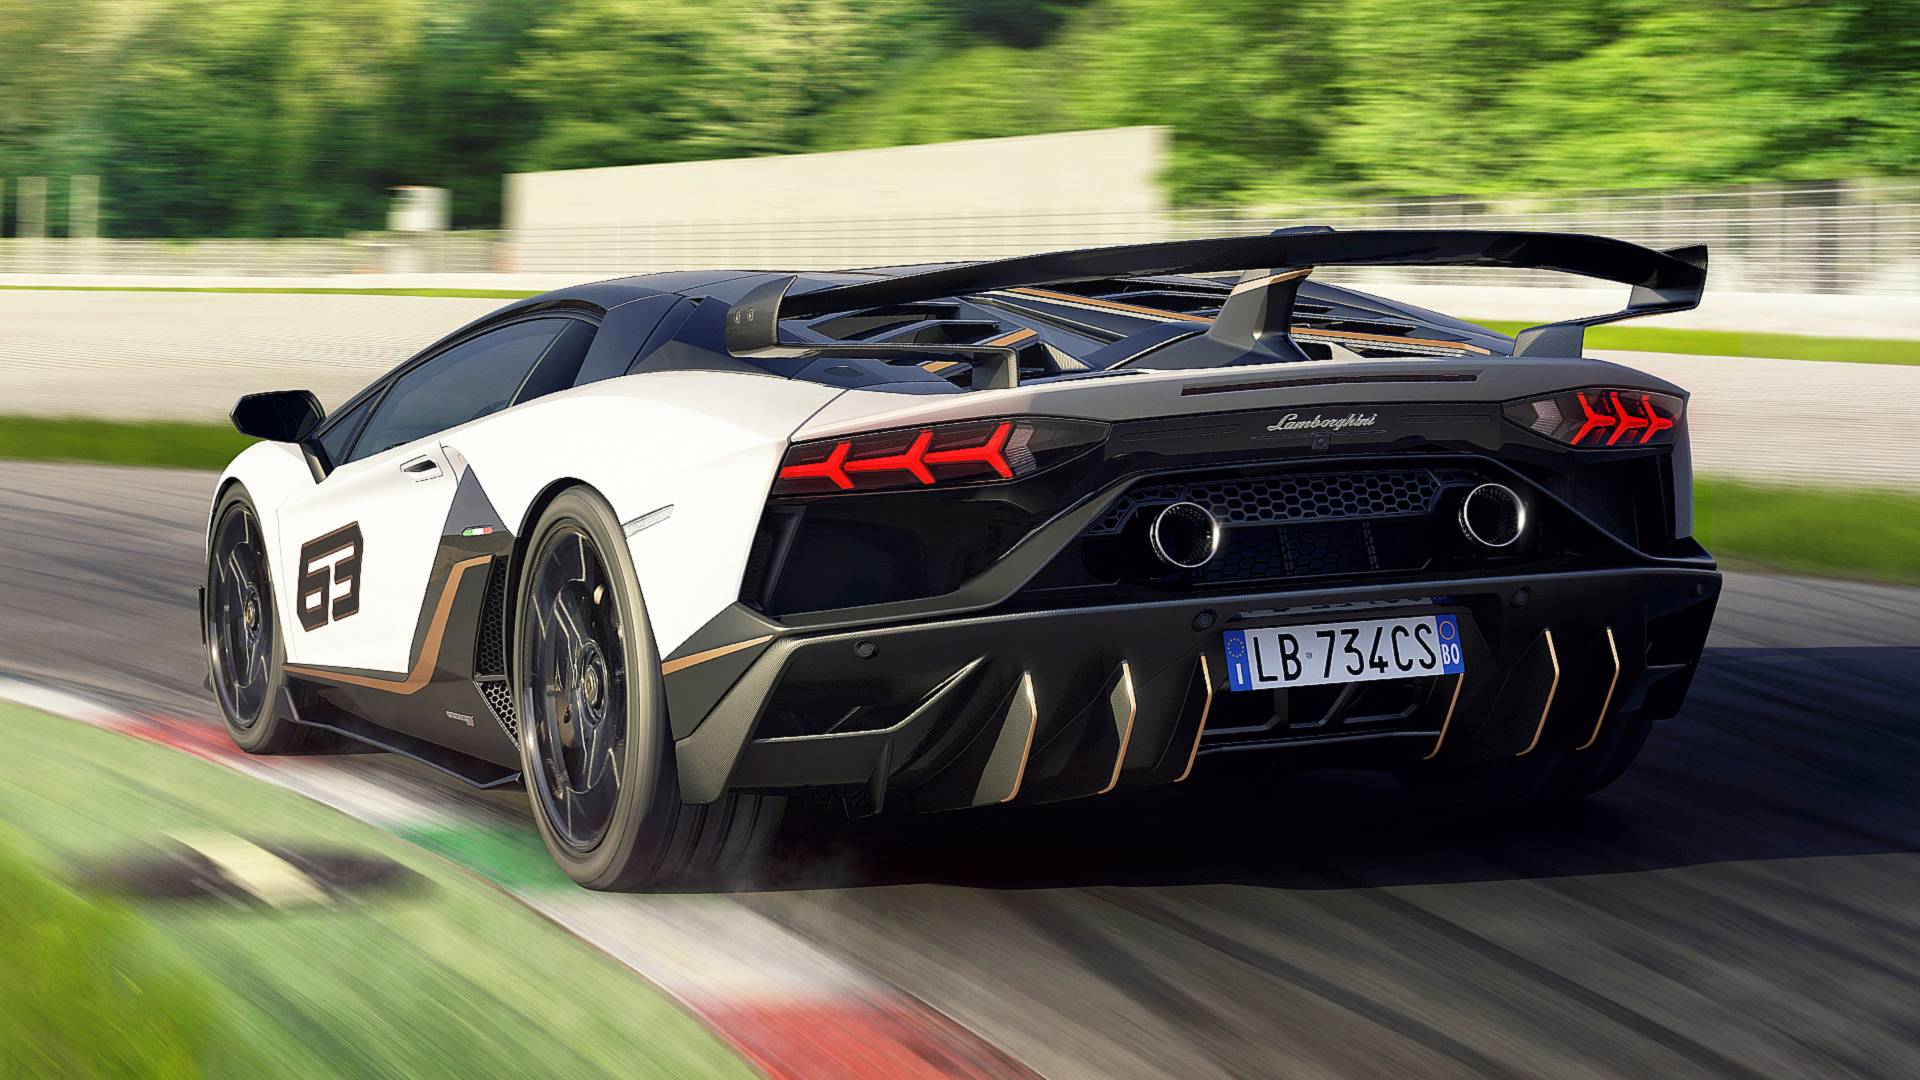 El sucesor del Lamborghini Aventador será brutal: primeros detalles